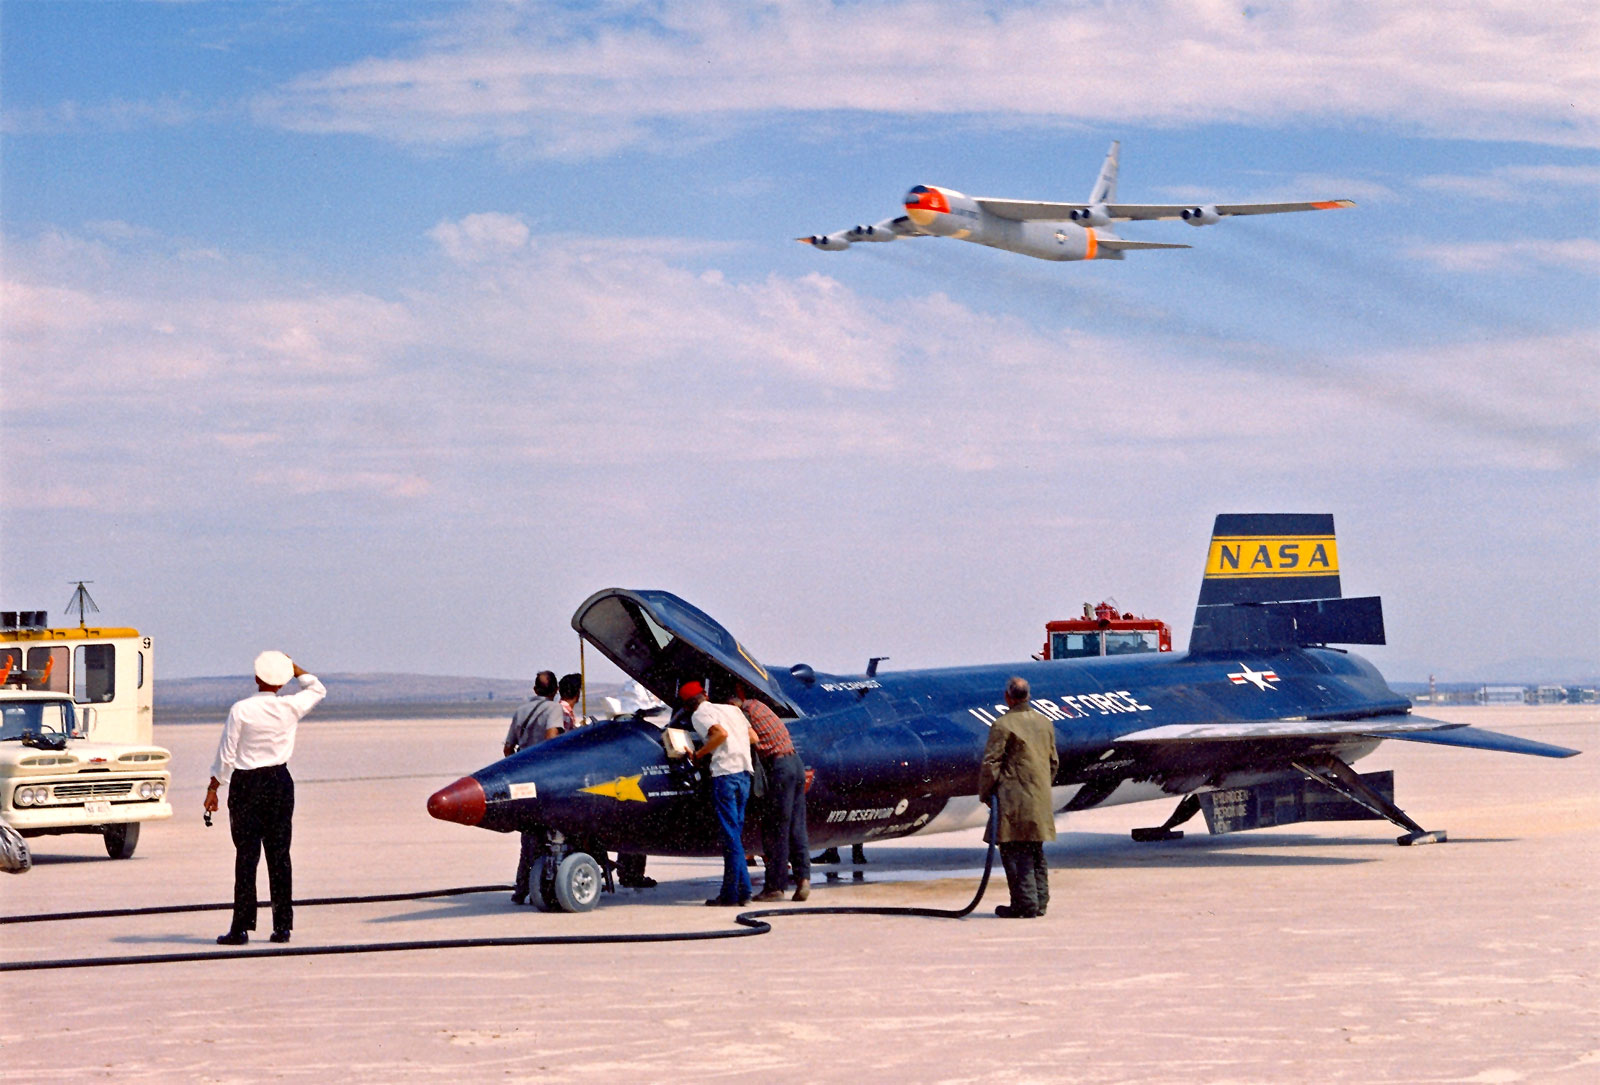 Jellegzetes pillanat: az X-15-ös skeresen leszállt, az anyagép áthúz fölötte